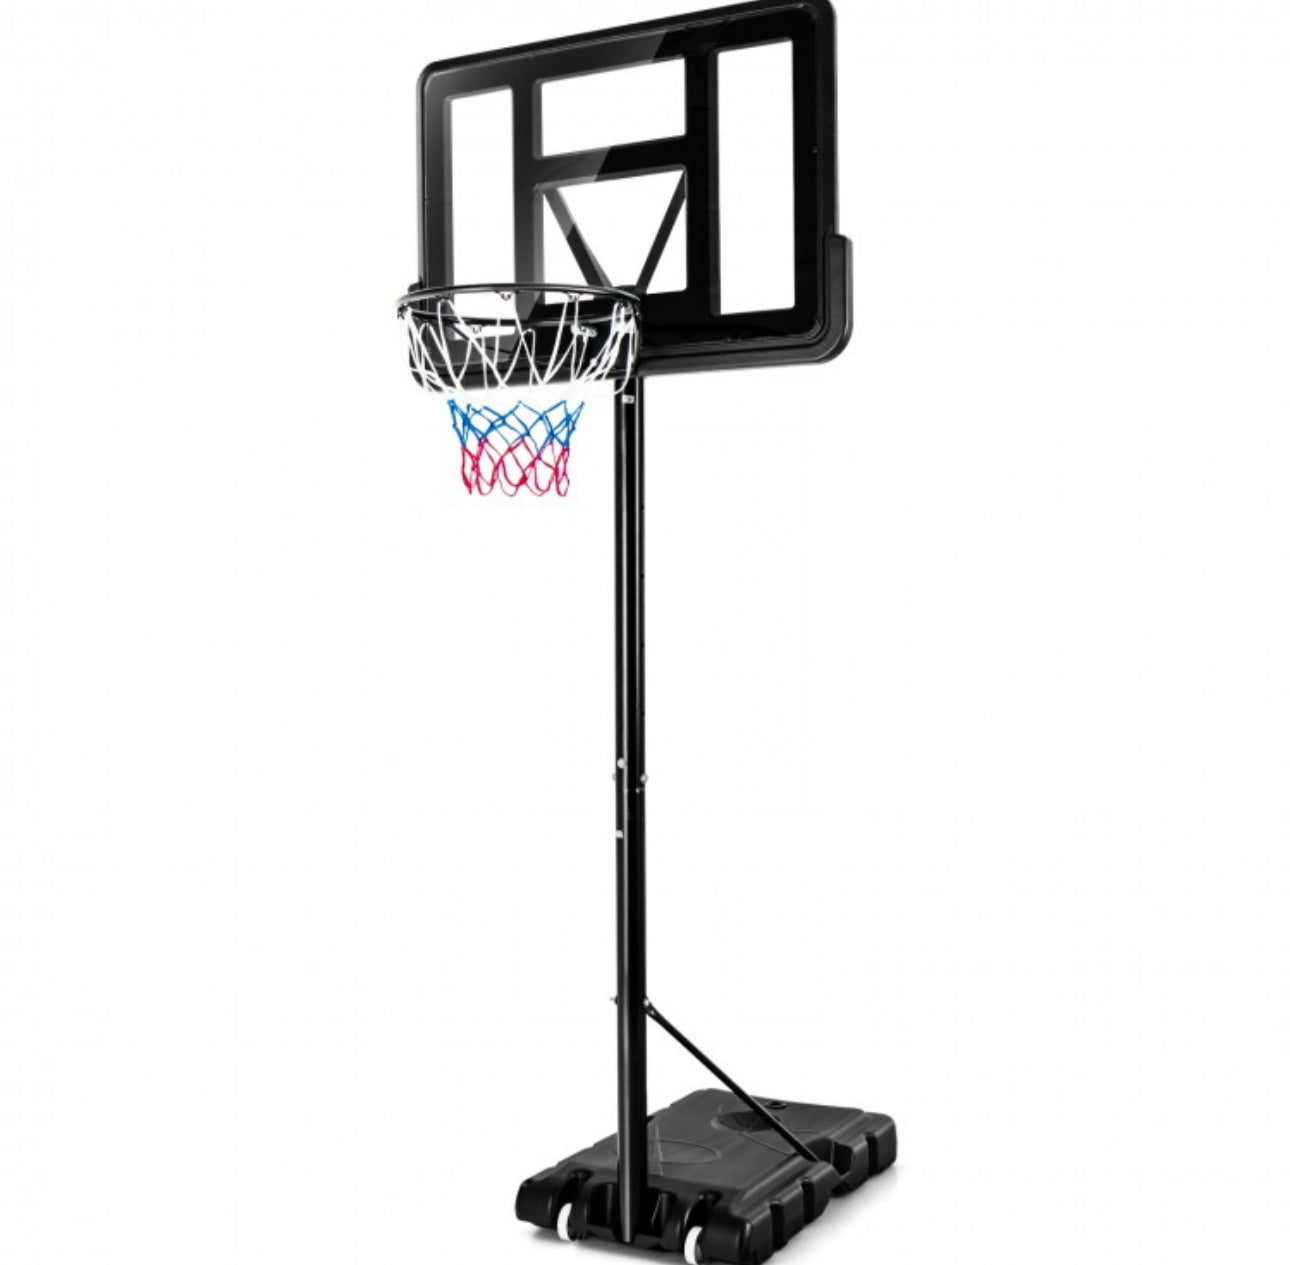 Super Fun Heavy Duty Adjustable Portable Basketball Net Hoop Stand | Shatterproof Backboard | Wheels | 4FT-10FT |